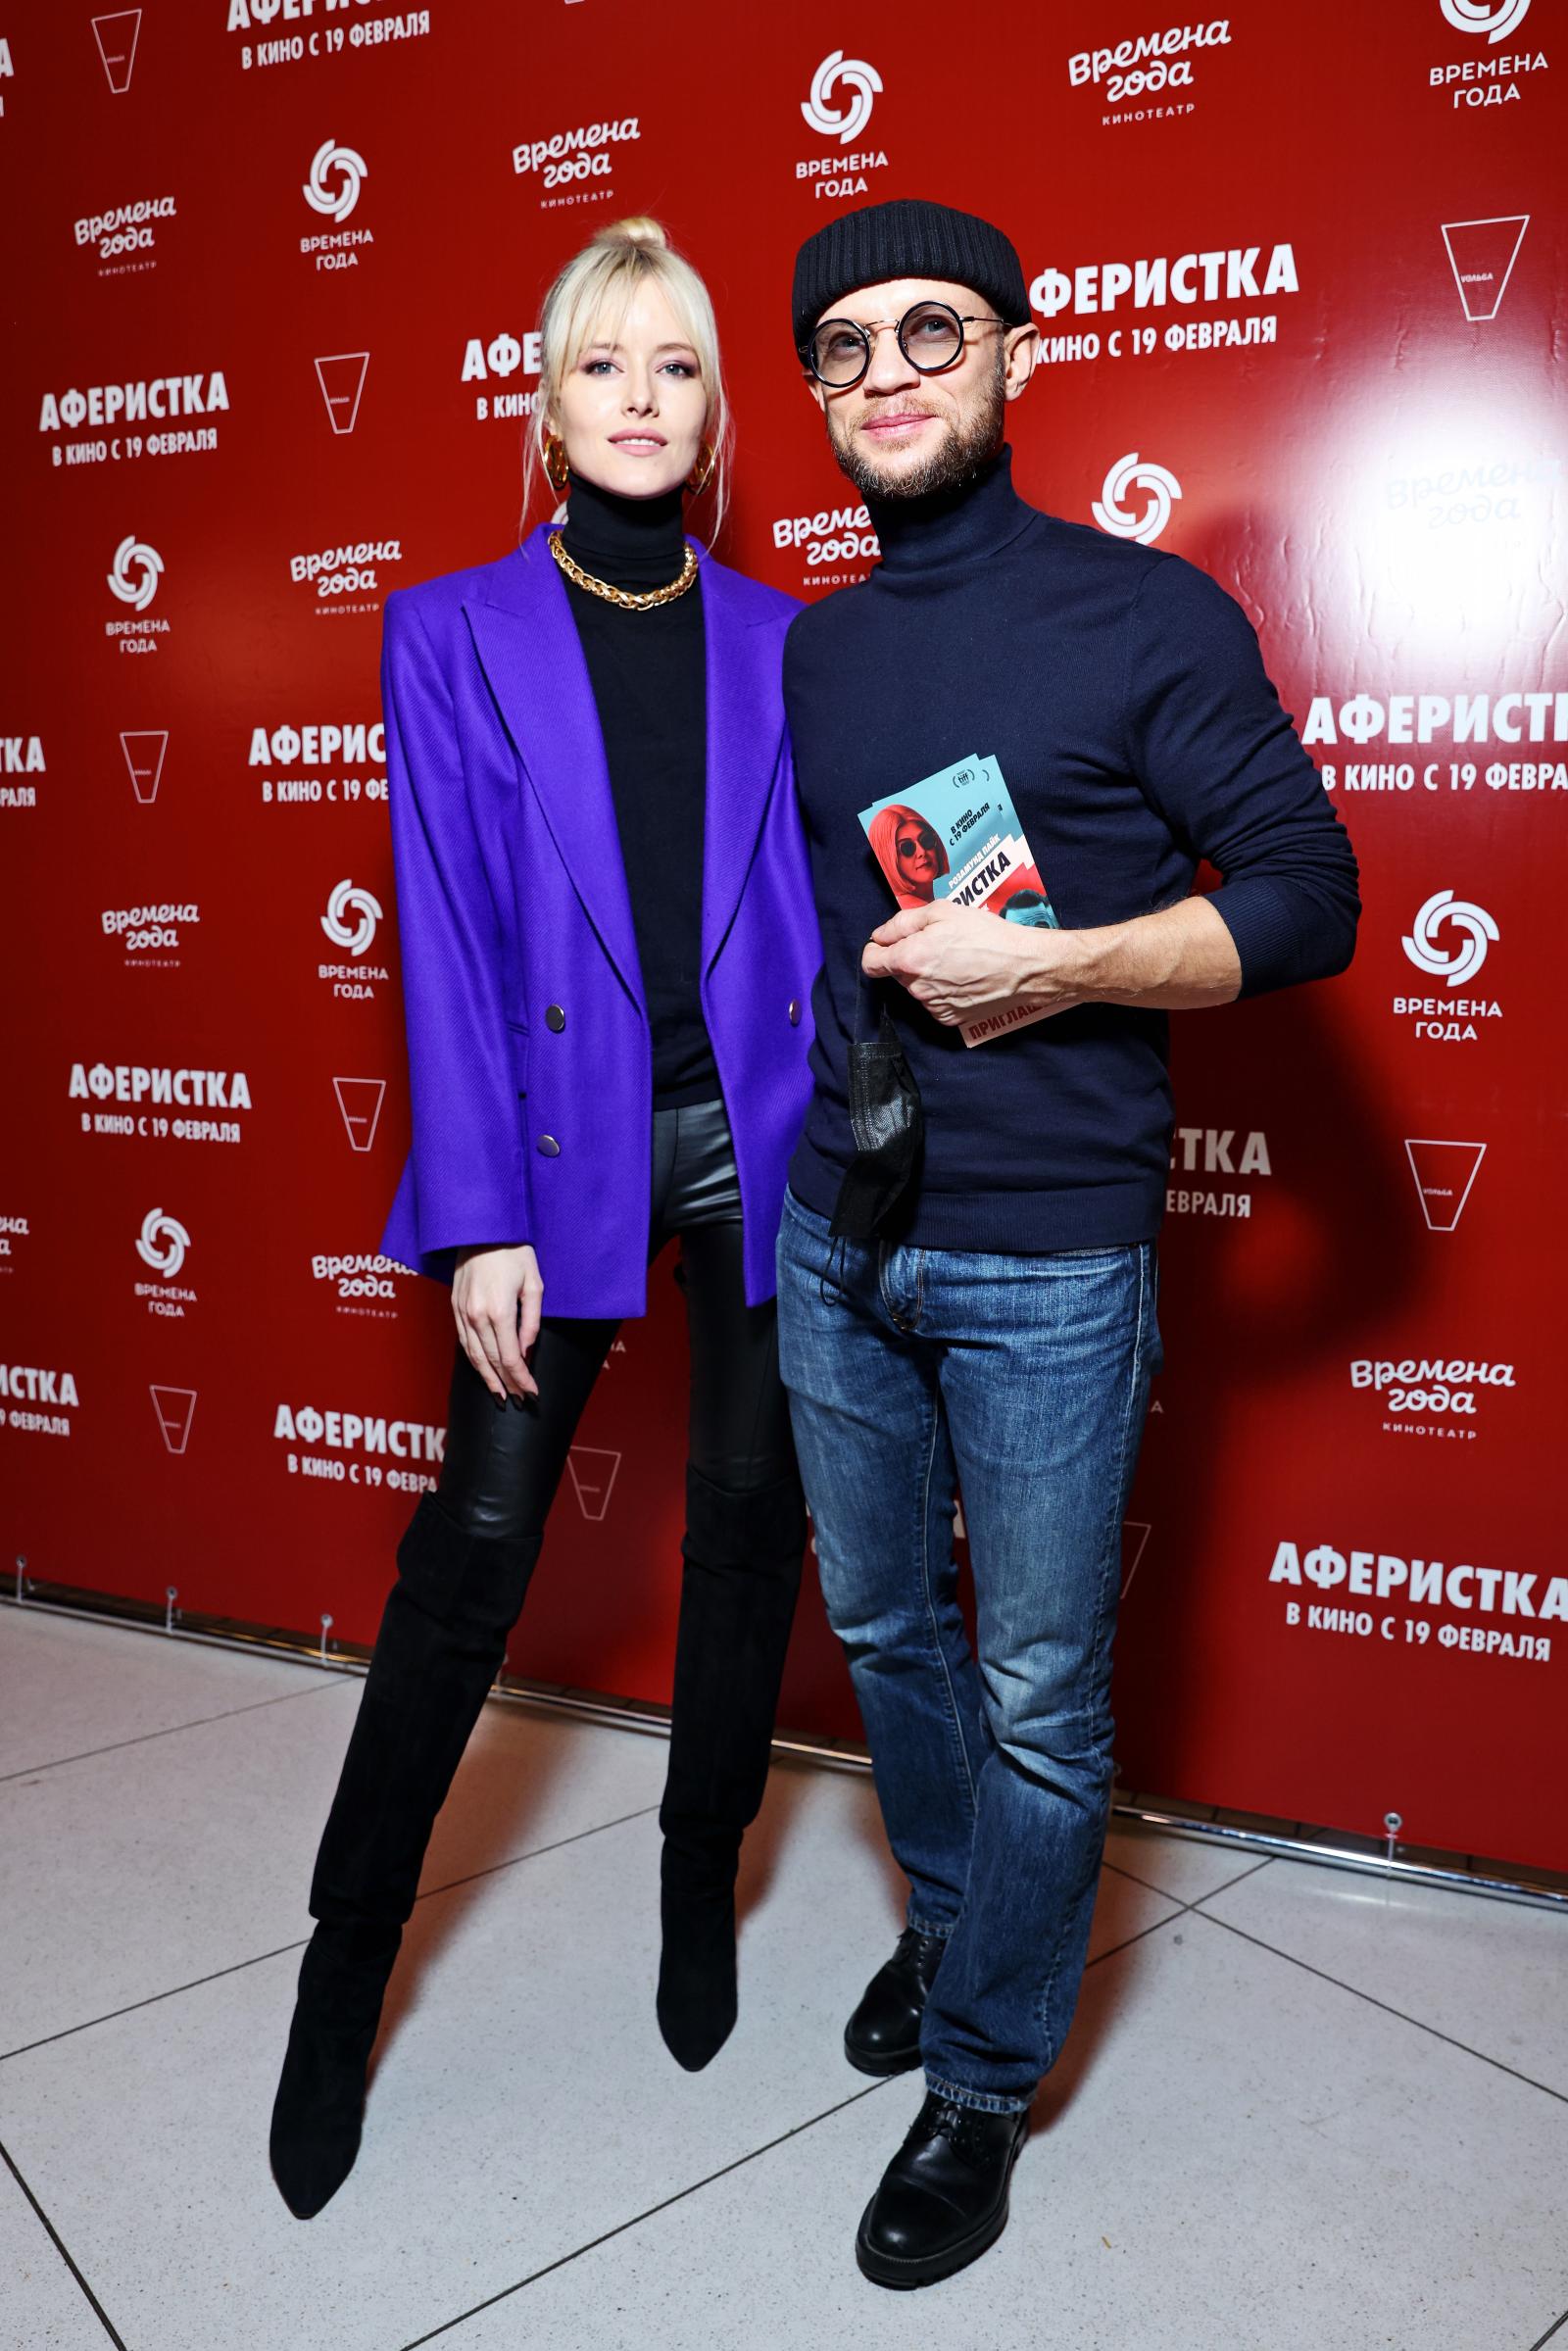 Хрусталев с женой, Ольга Кабо, Мария Голубкина и другие звезды на премьере «Аферистки»